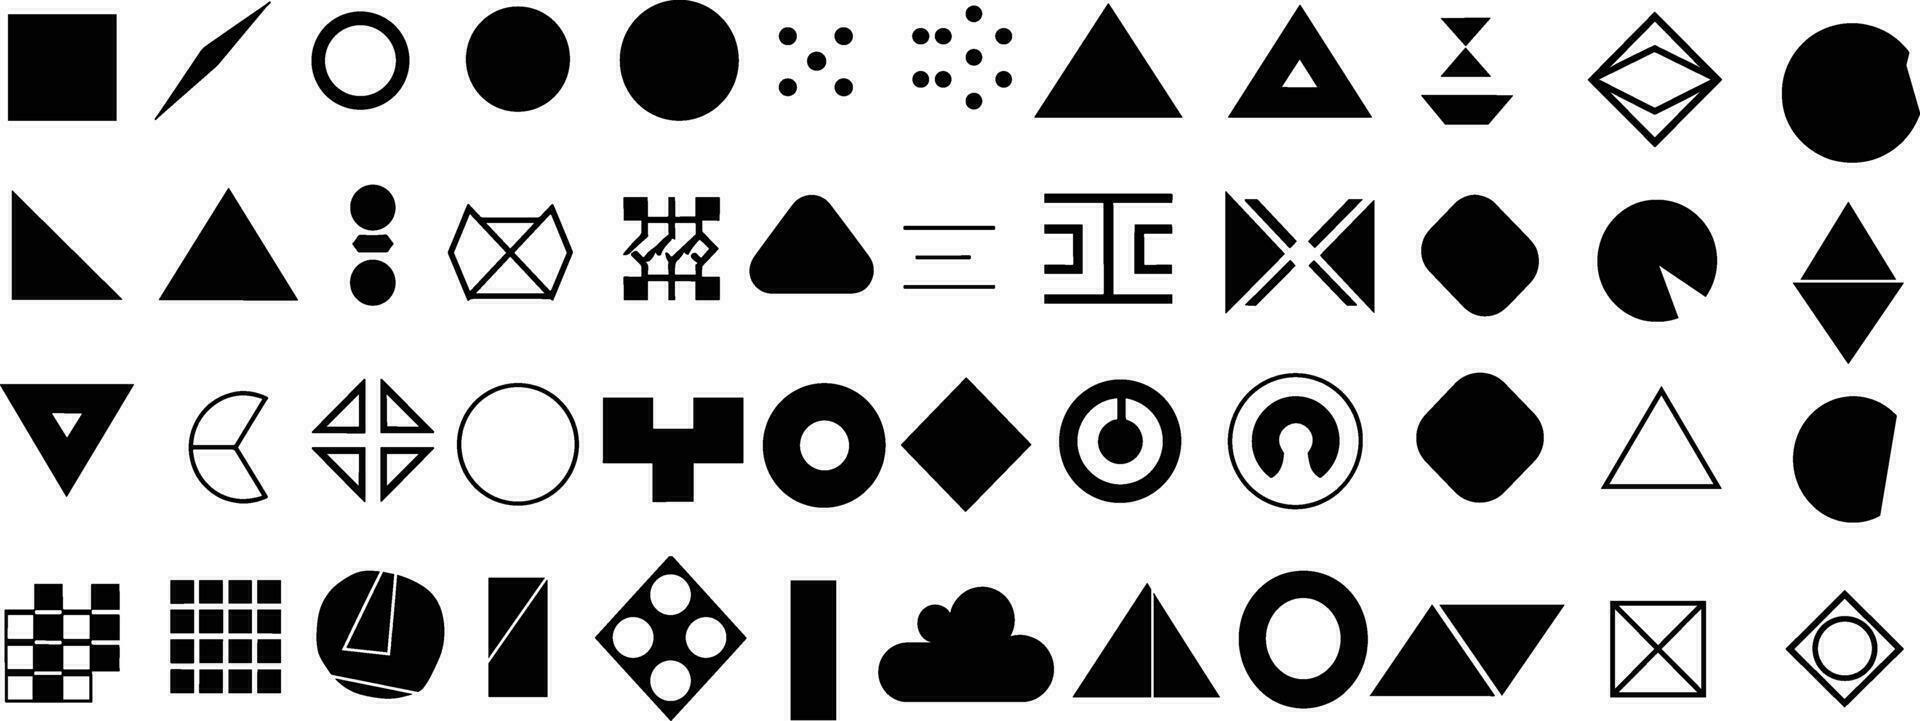 modern meetkundig vormen verzameling, abstract veelhoekige elementen en modieus minimalistische figuren, vector illustratie van eenvoudig cirkels, zeshoeken, driehoeken, en sterren in vlak stijl